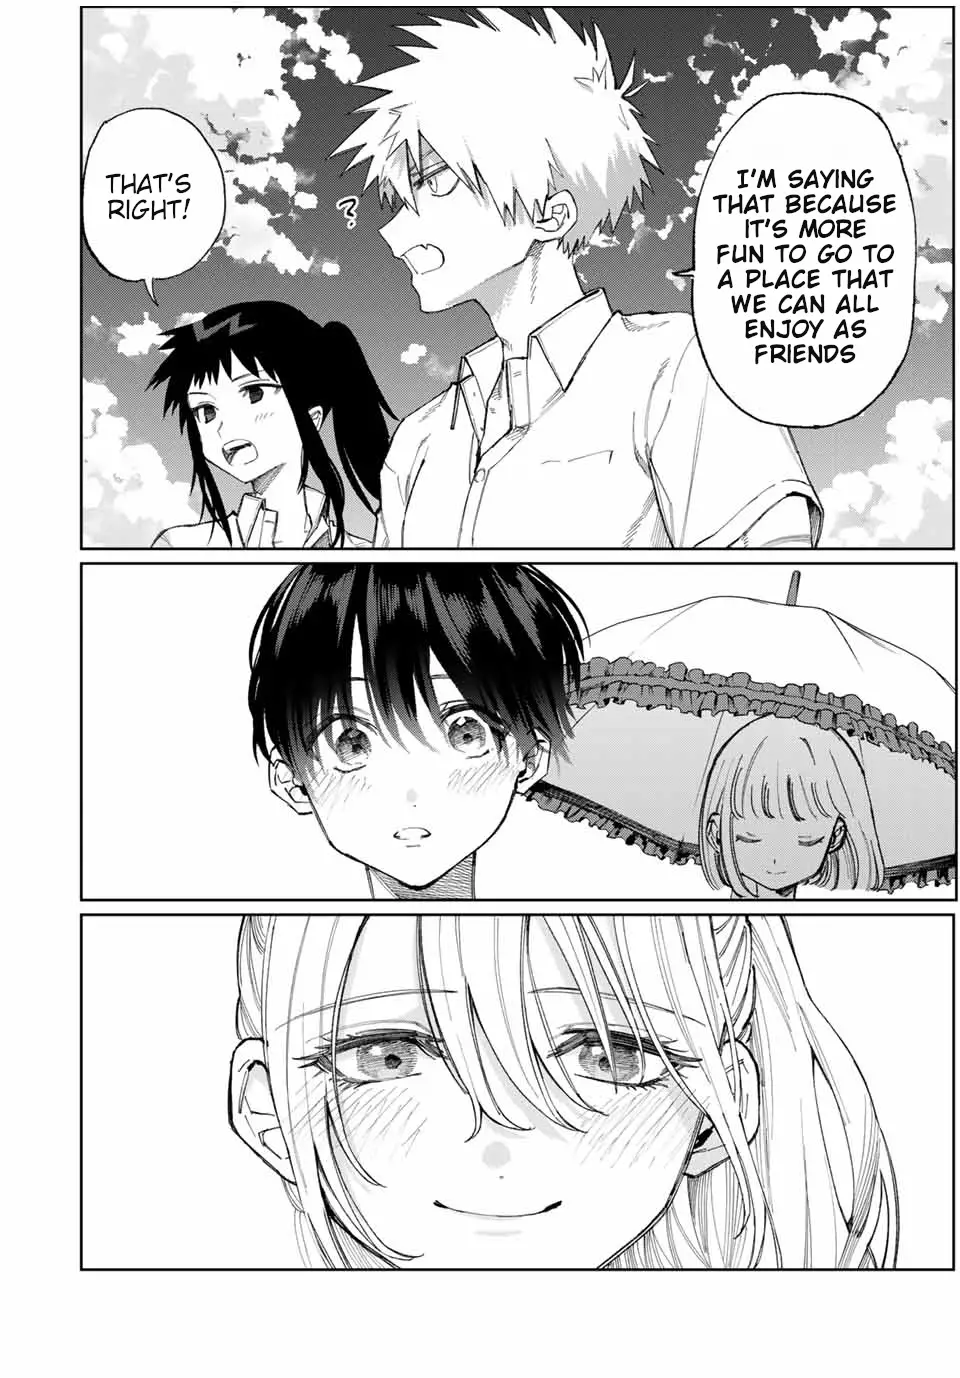 Shikimori's Not Just A Cutie - 26 page 9